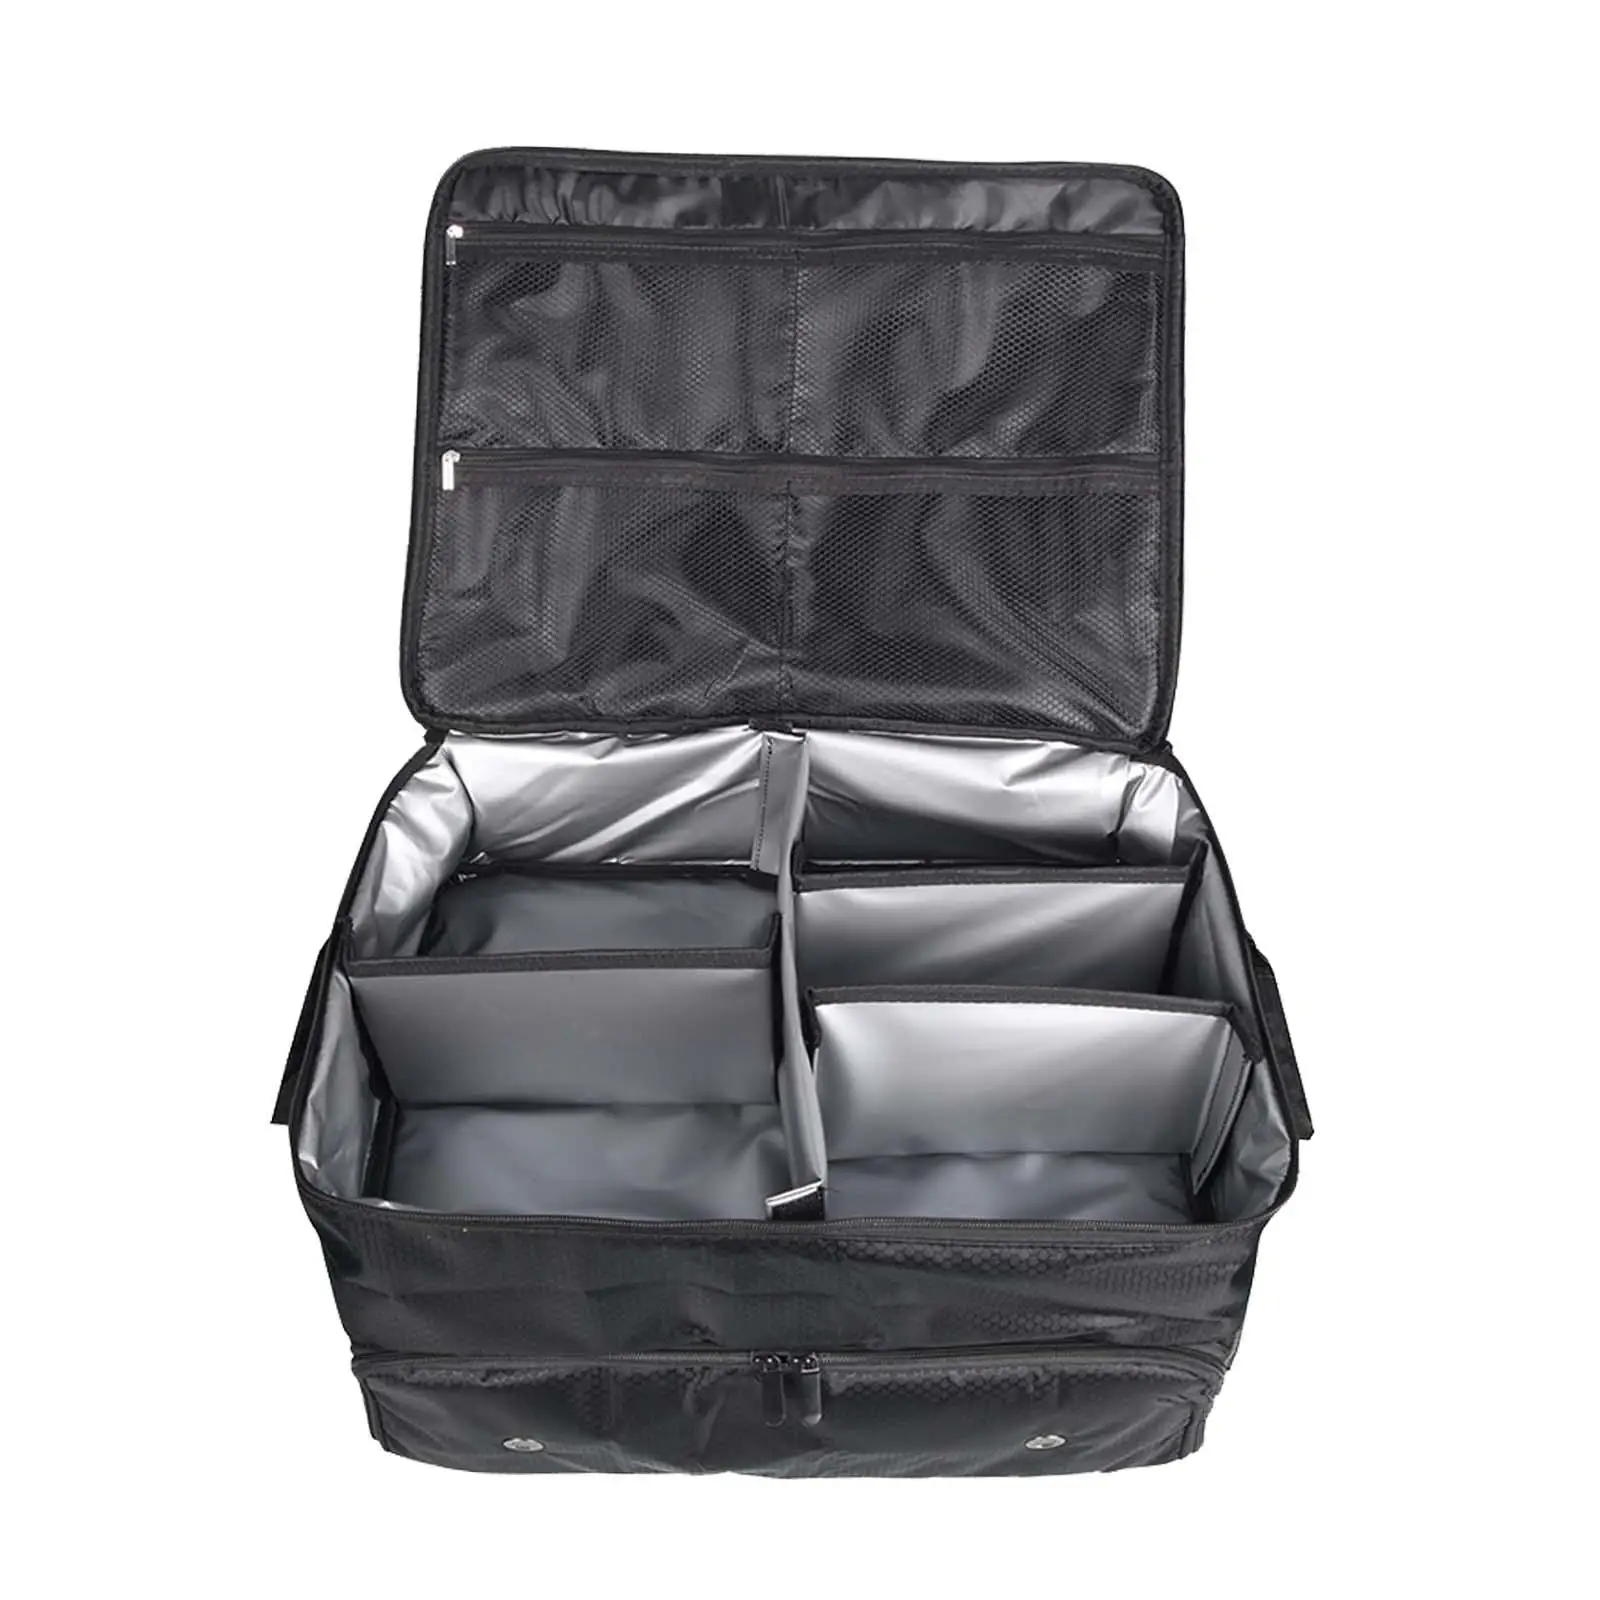 Органайзер для багажника для гольфа, складной багажник для хранения предметов первой необходимости, дорожная сумка, шкафчик для одежды, отличная идея подарка для игроков в гольф - 2